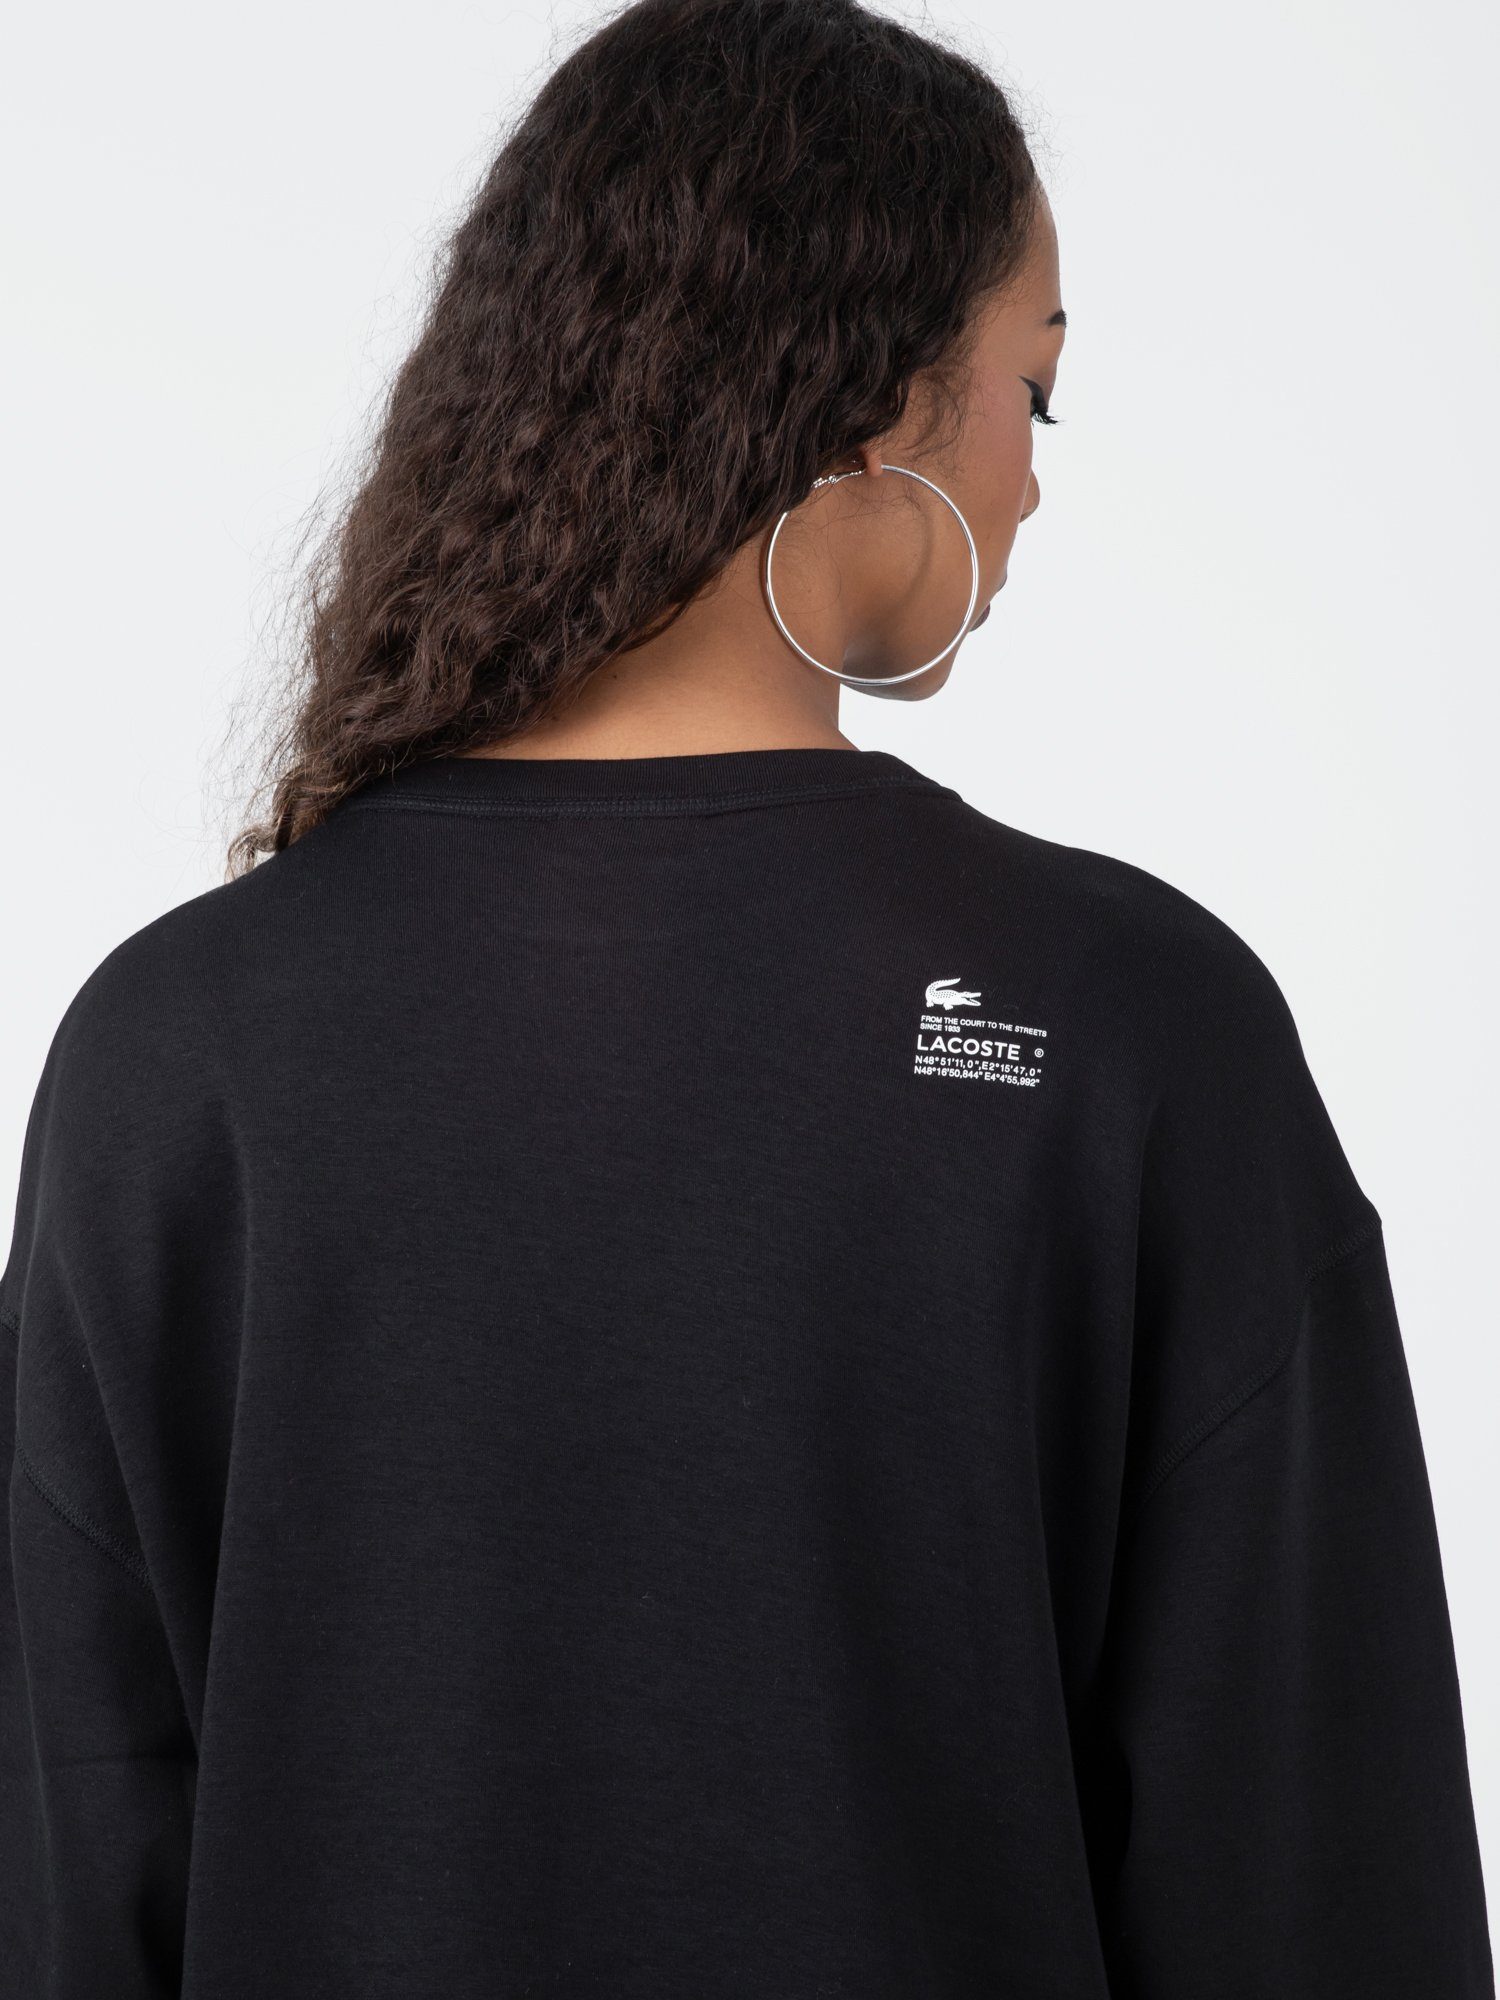 Lacoste Sweatshirt Sweater Jogger Lacoste Logo